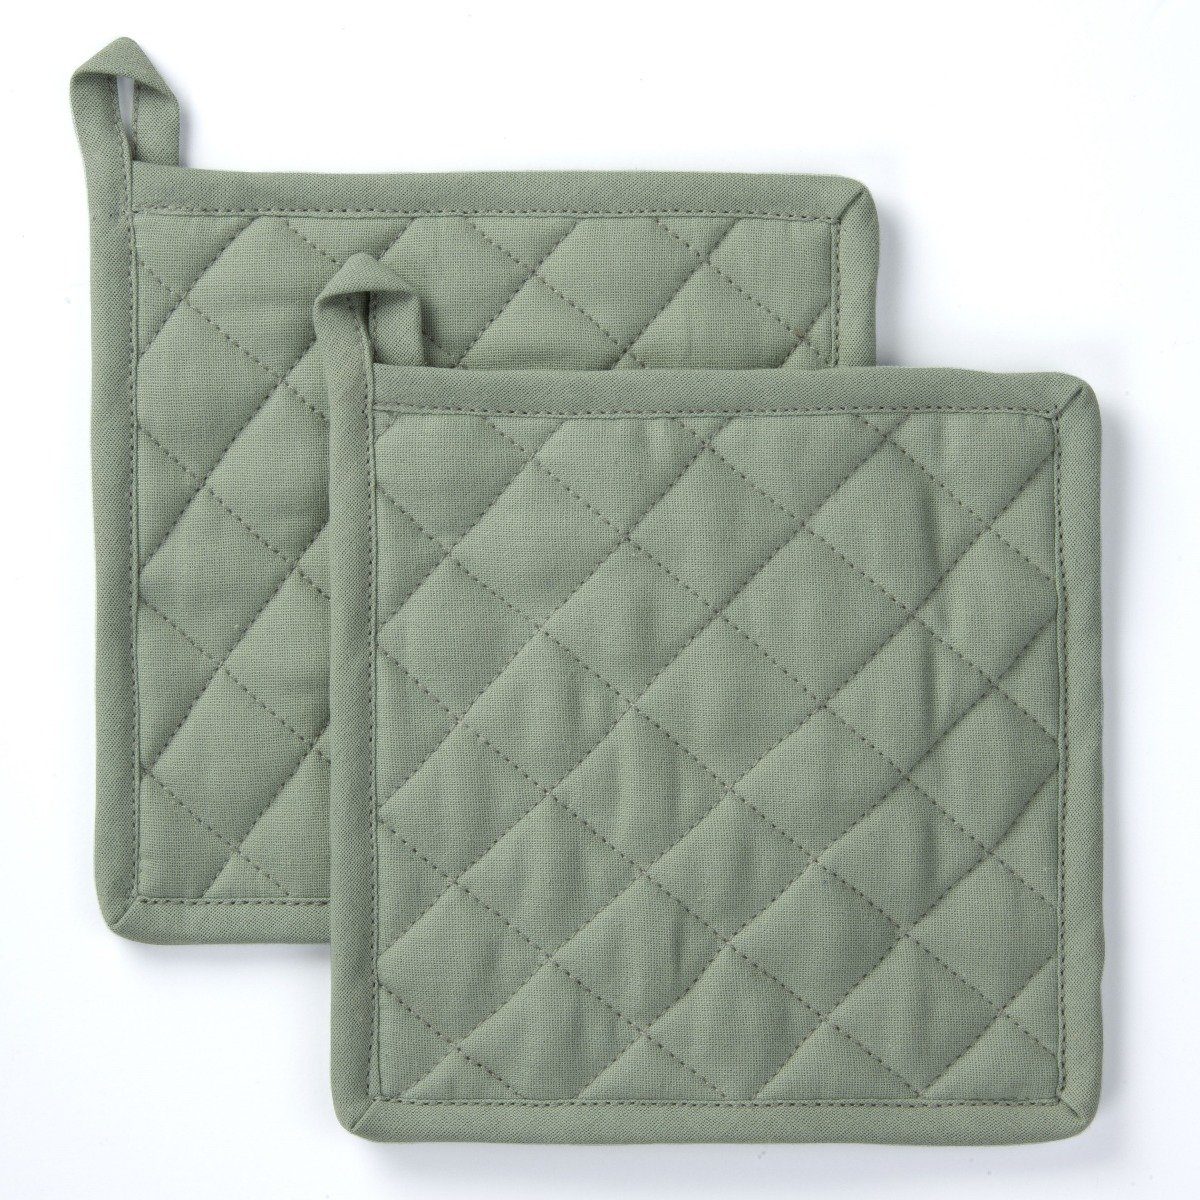 Byrklund Geschirrtuch Topflappen Stay Cold Jade - 2x 20x20 cm, aus 100% Baumwolle, Premium-Qualität - Vielfältig einsetzbares